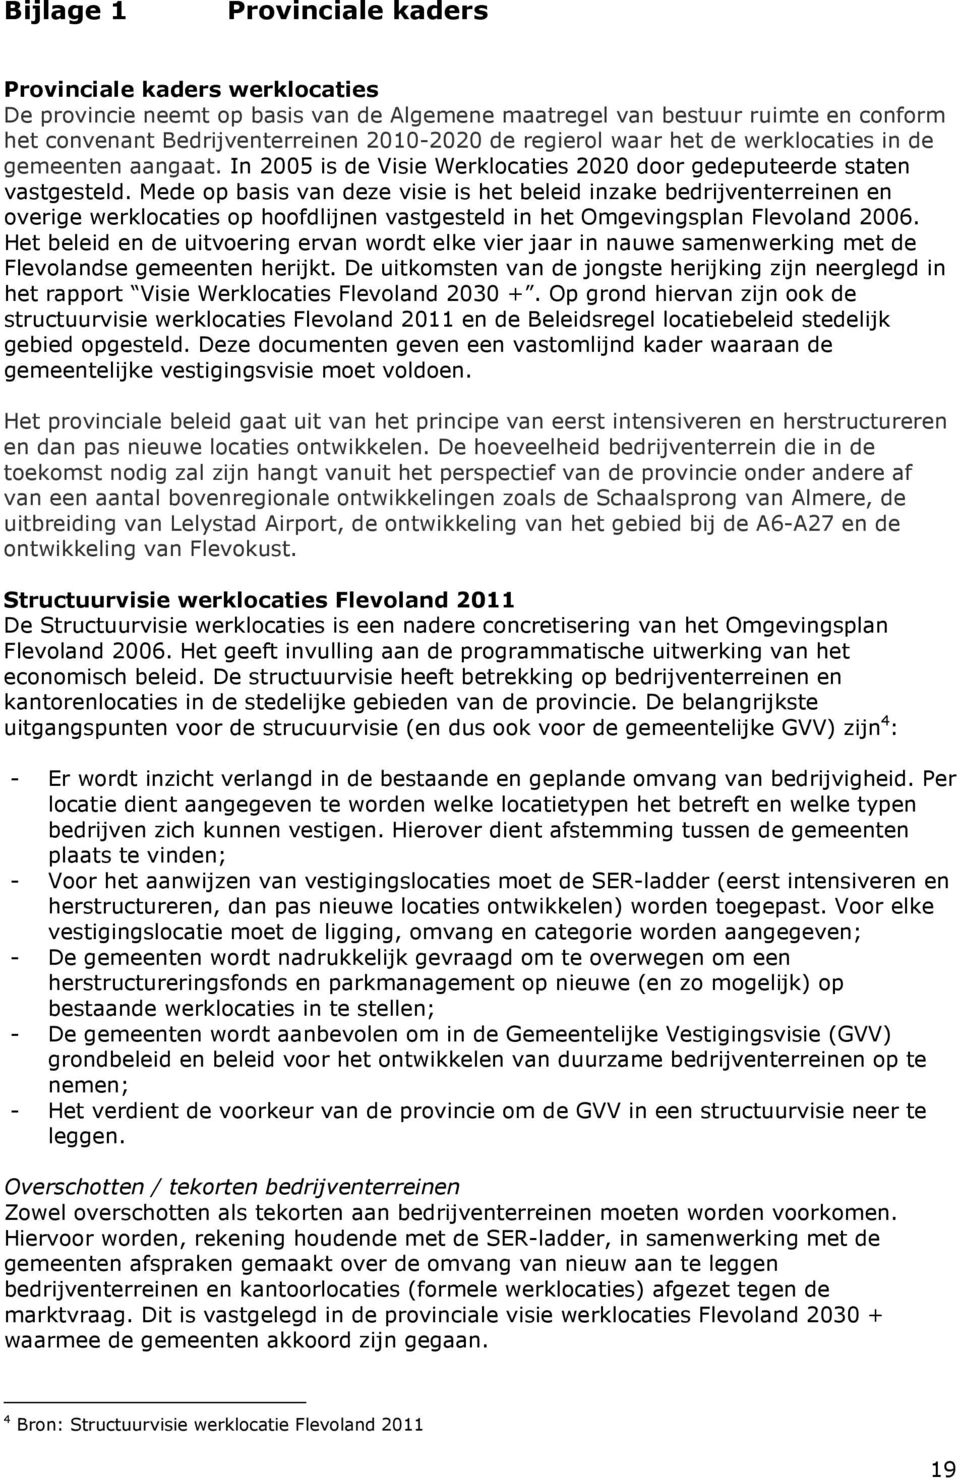 Mede op basis van deze visie is het beleid inzake bedrijventerreinen en overige werklocaties op hoofdlijnen vastgesteld in het Omgevingsplan Flevoland 2006.